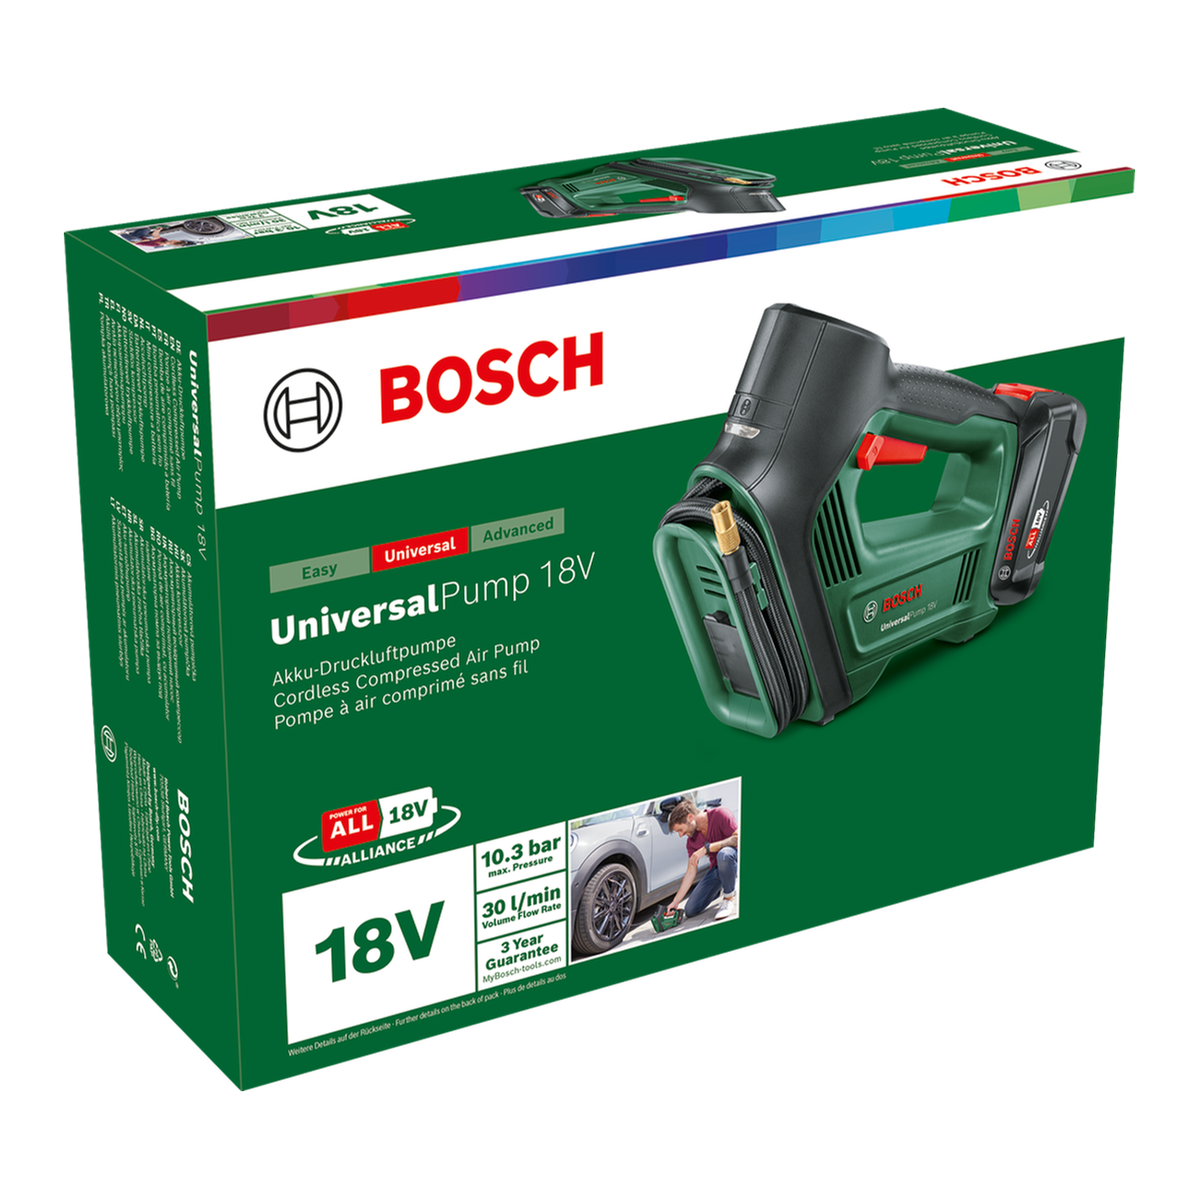 Bosch UniversalPump 18V Akku-Druckluftpumpe - Premium Bikeshop